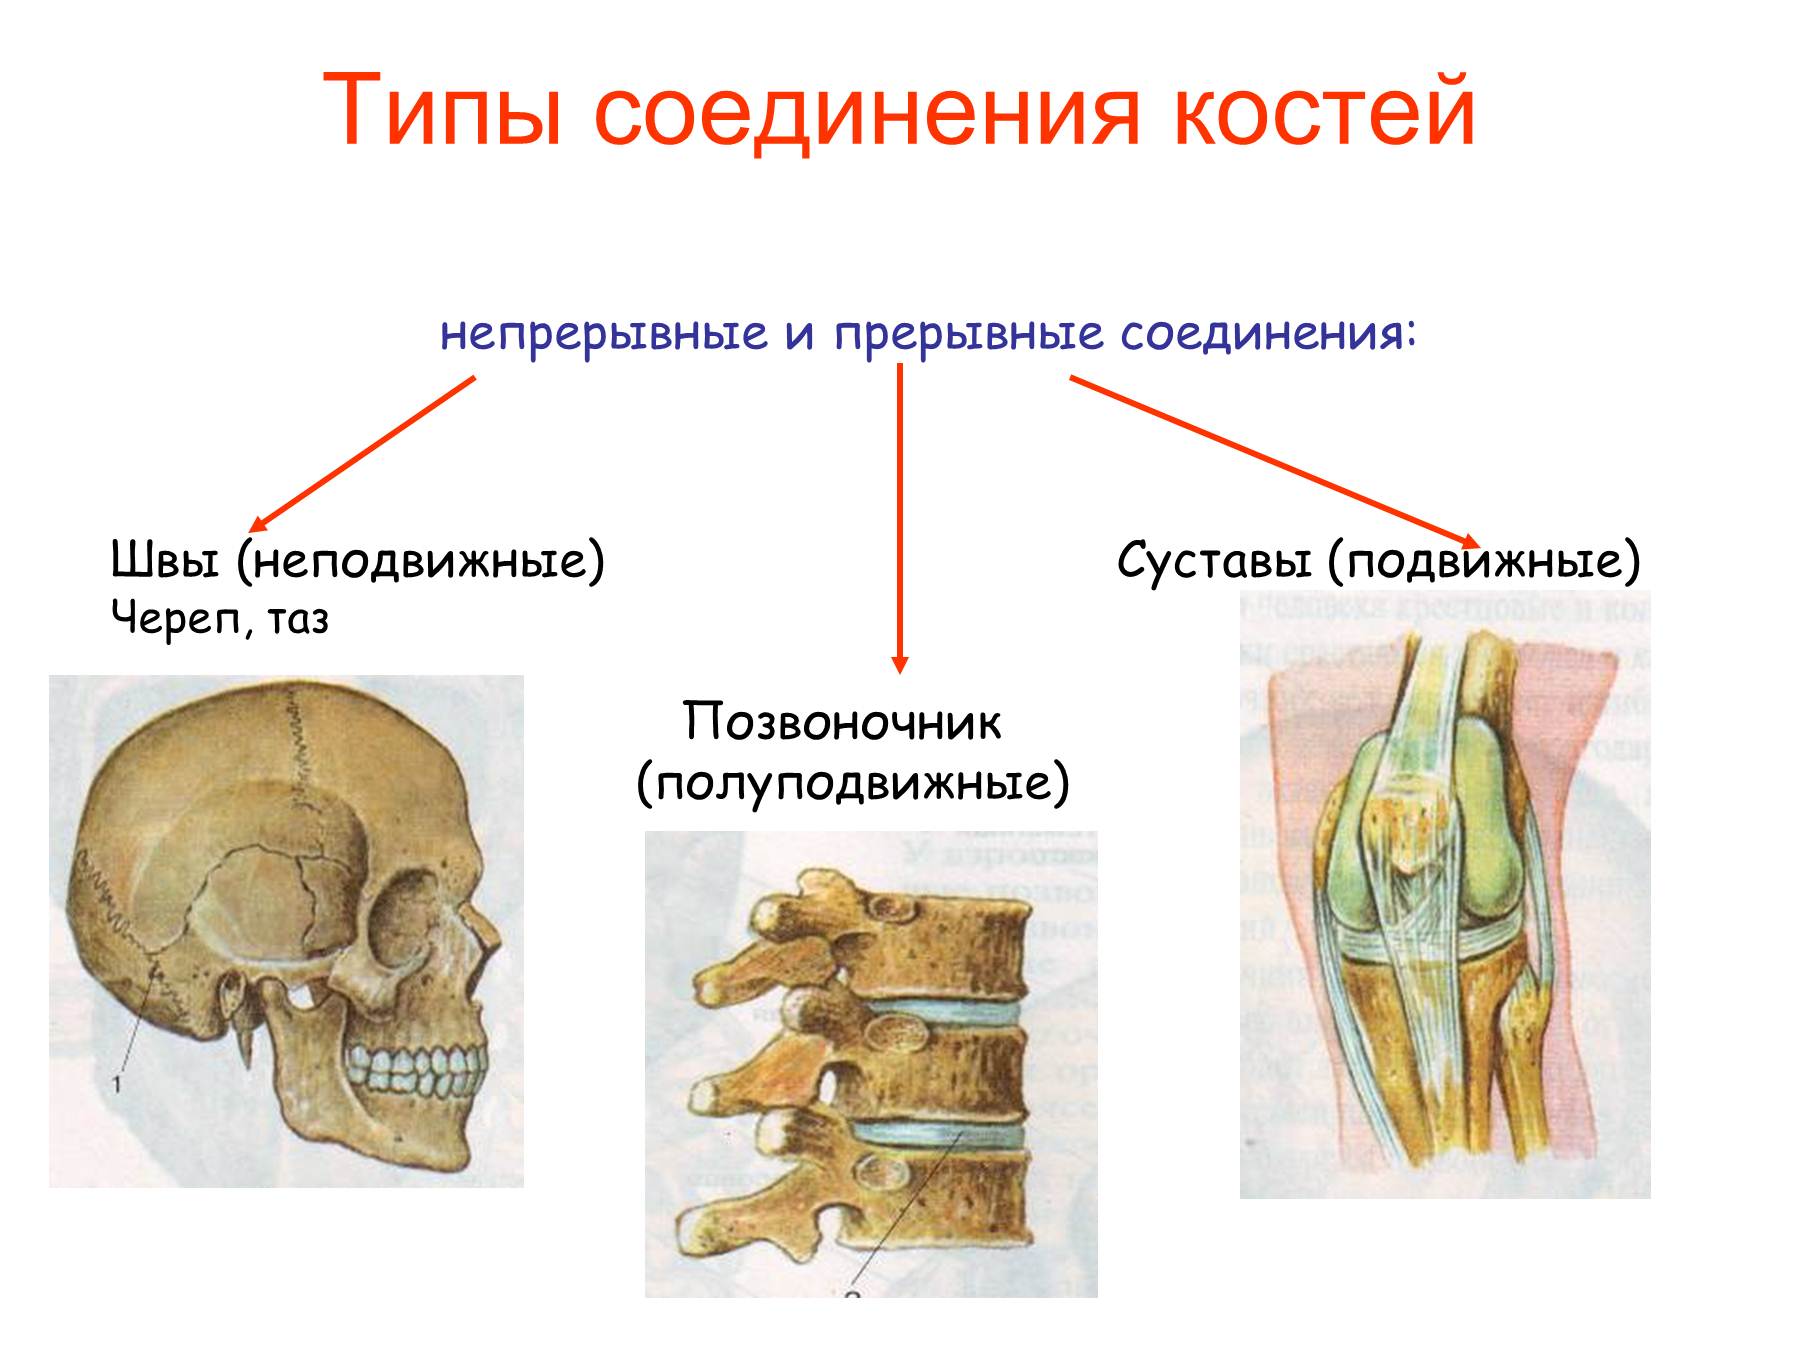 Кости позвоночника тип соединения. Соединение костей человека непрерывные прерывные. Подвижное полуподвижное и неподвижное соединение костей. Соединения костей непрерывные прерывные симфизы. Неподвижные полуподвижные и подвижные соединения костей.